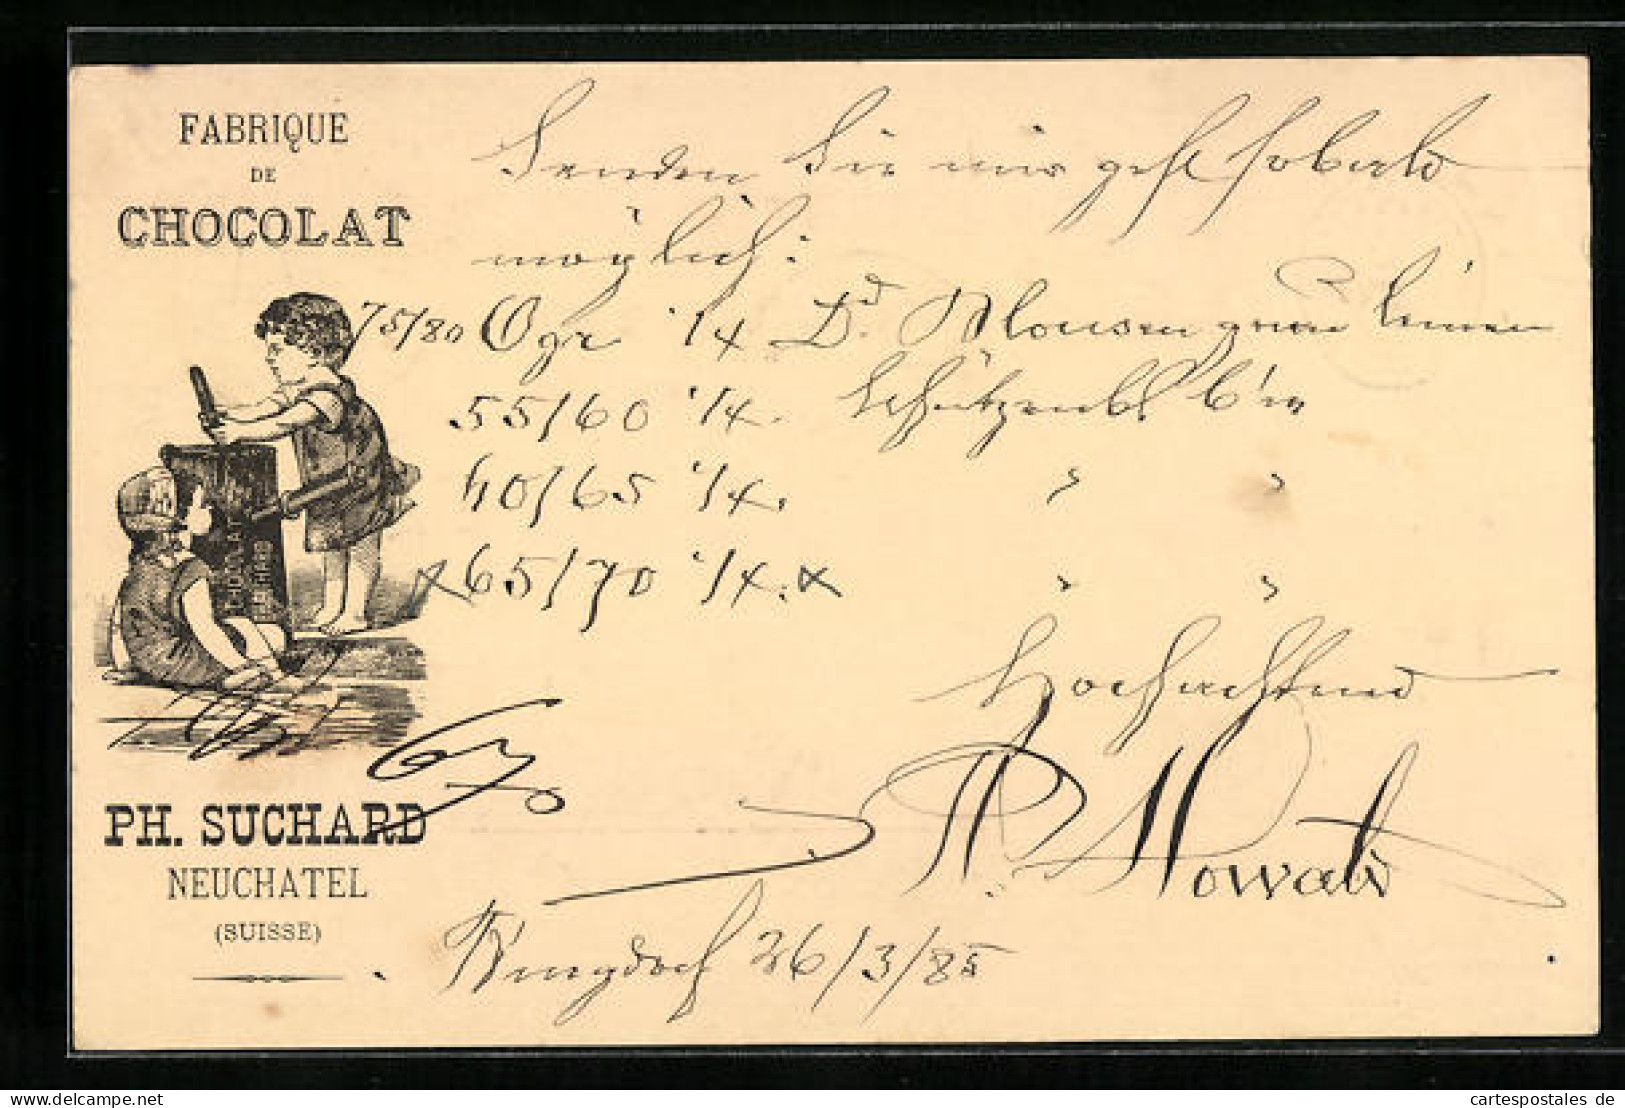 Vorläufer-Lithographie Neuchâtel, 1885, Fabrique De Cocolat, Geschwister Mit Baumstamm, Reklame Für Kakao Suchard  - Cultivation